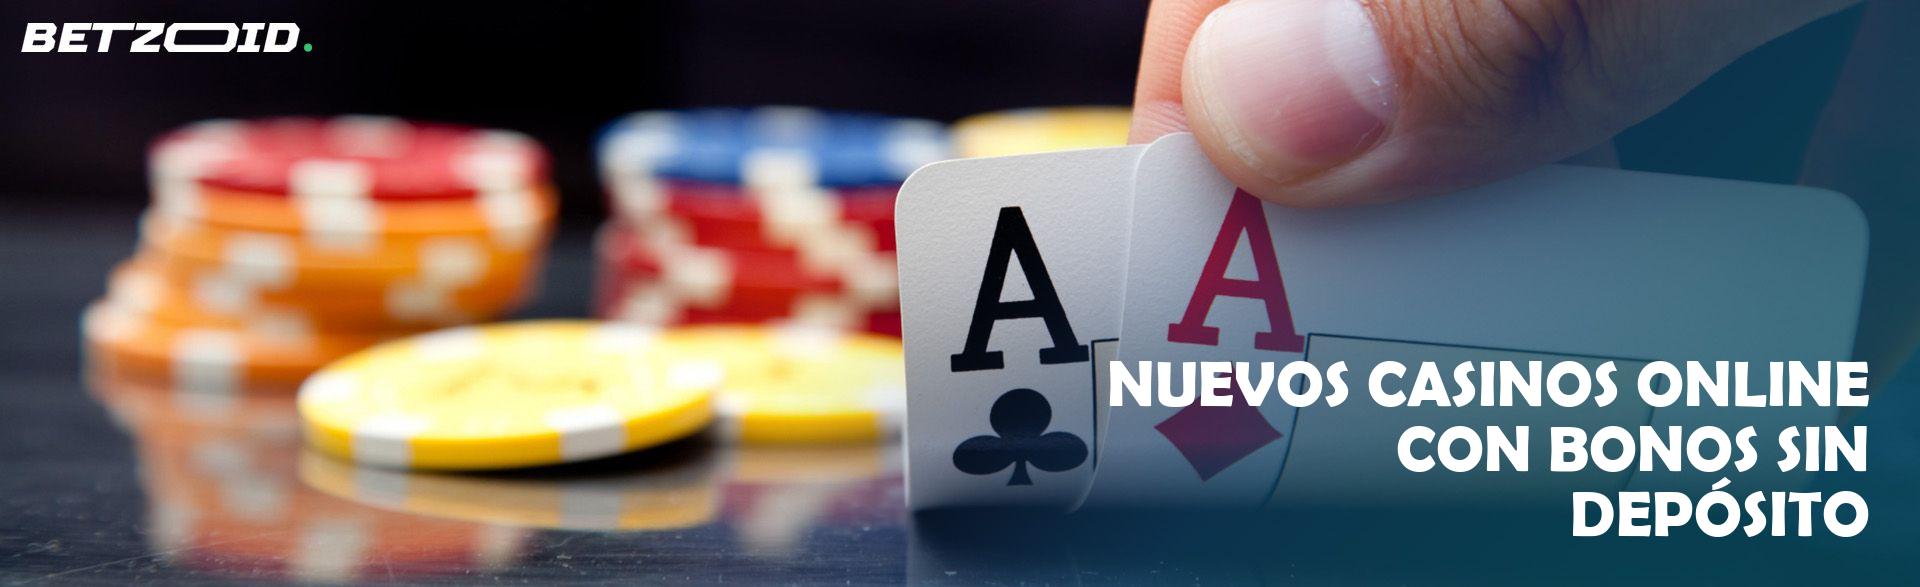 Bonos de Casino Nuevos